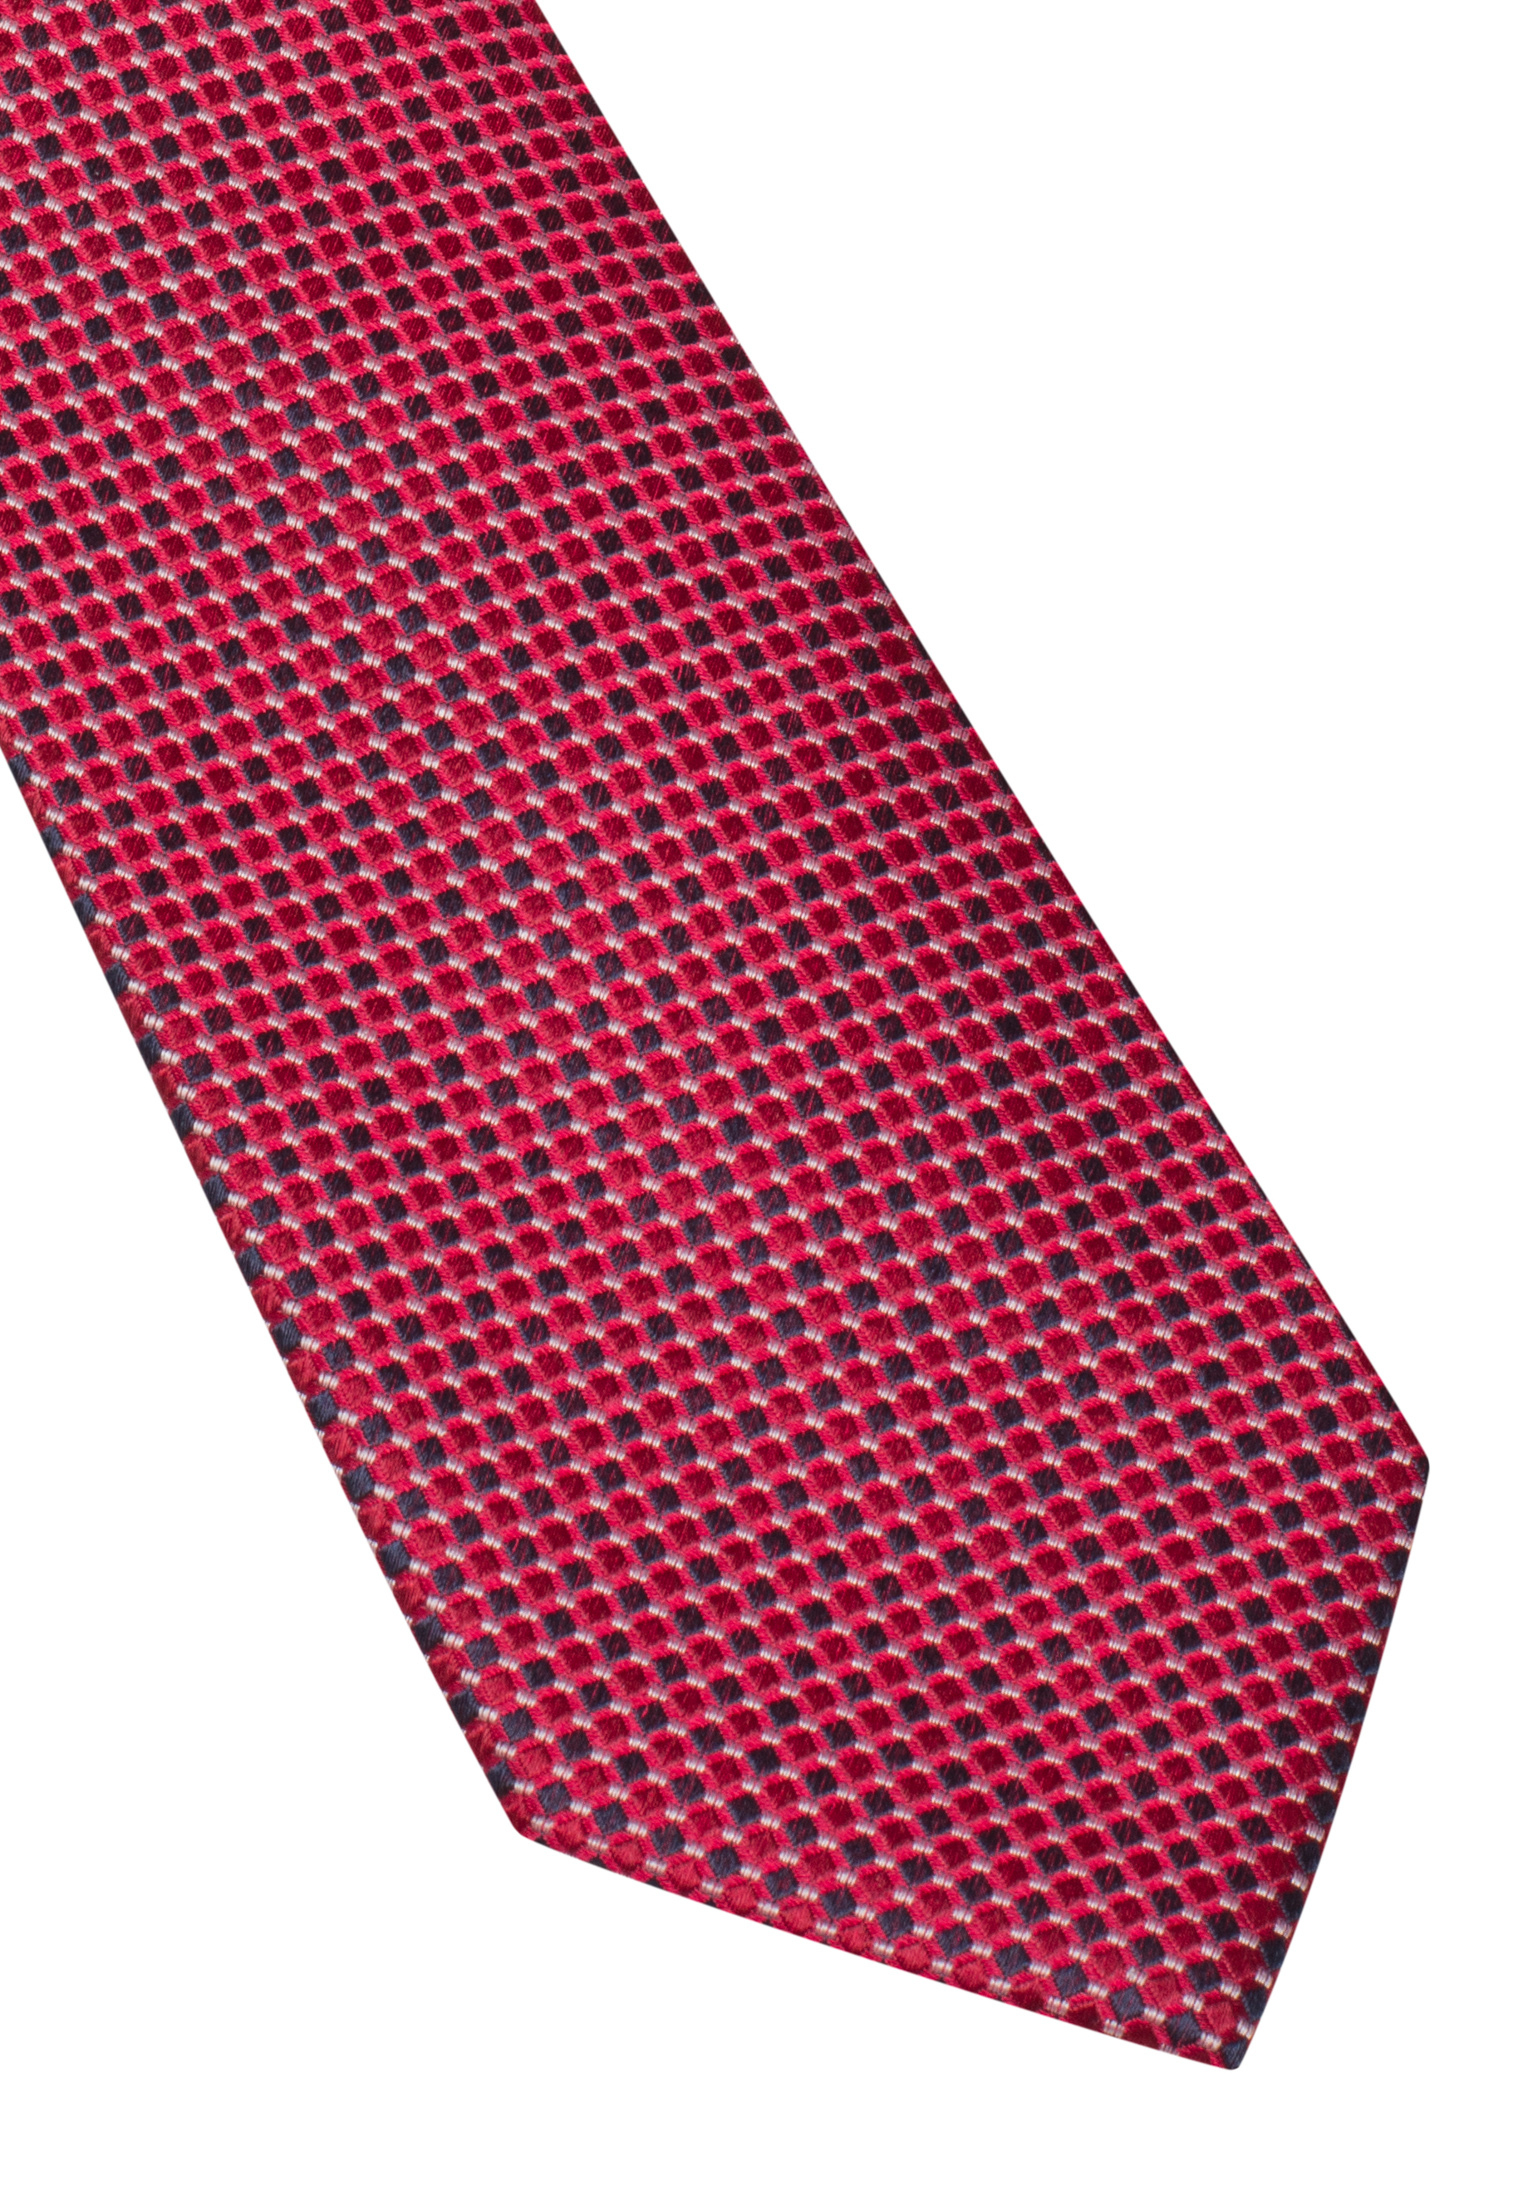 Krawatte in rot strukturiert | rot | 142 | 1AC00407-05-01-142